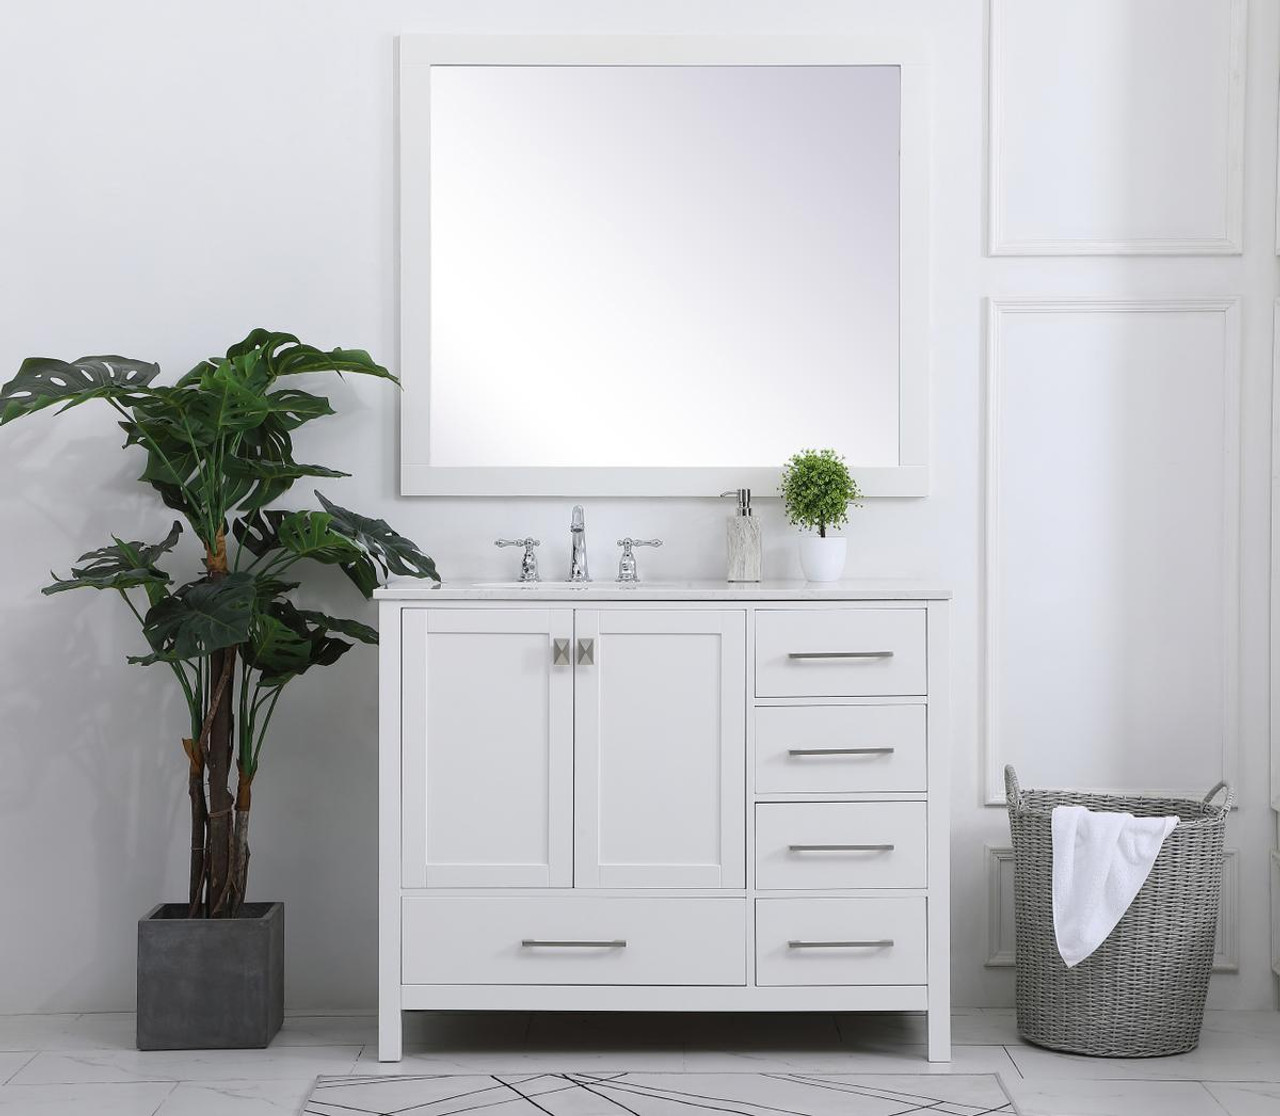 ELEGANT DECOR VF18842WH 42 inch Single Bathroom Vanity in White